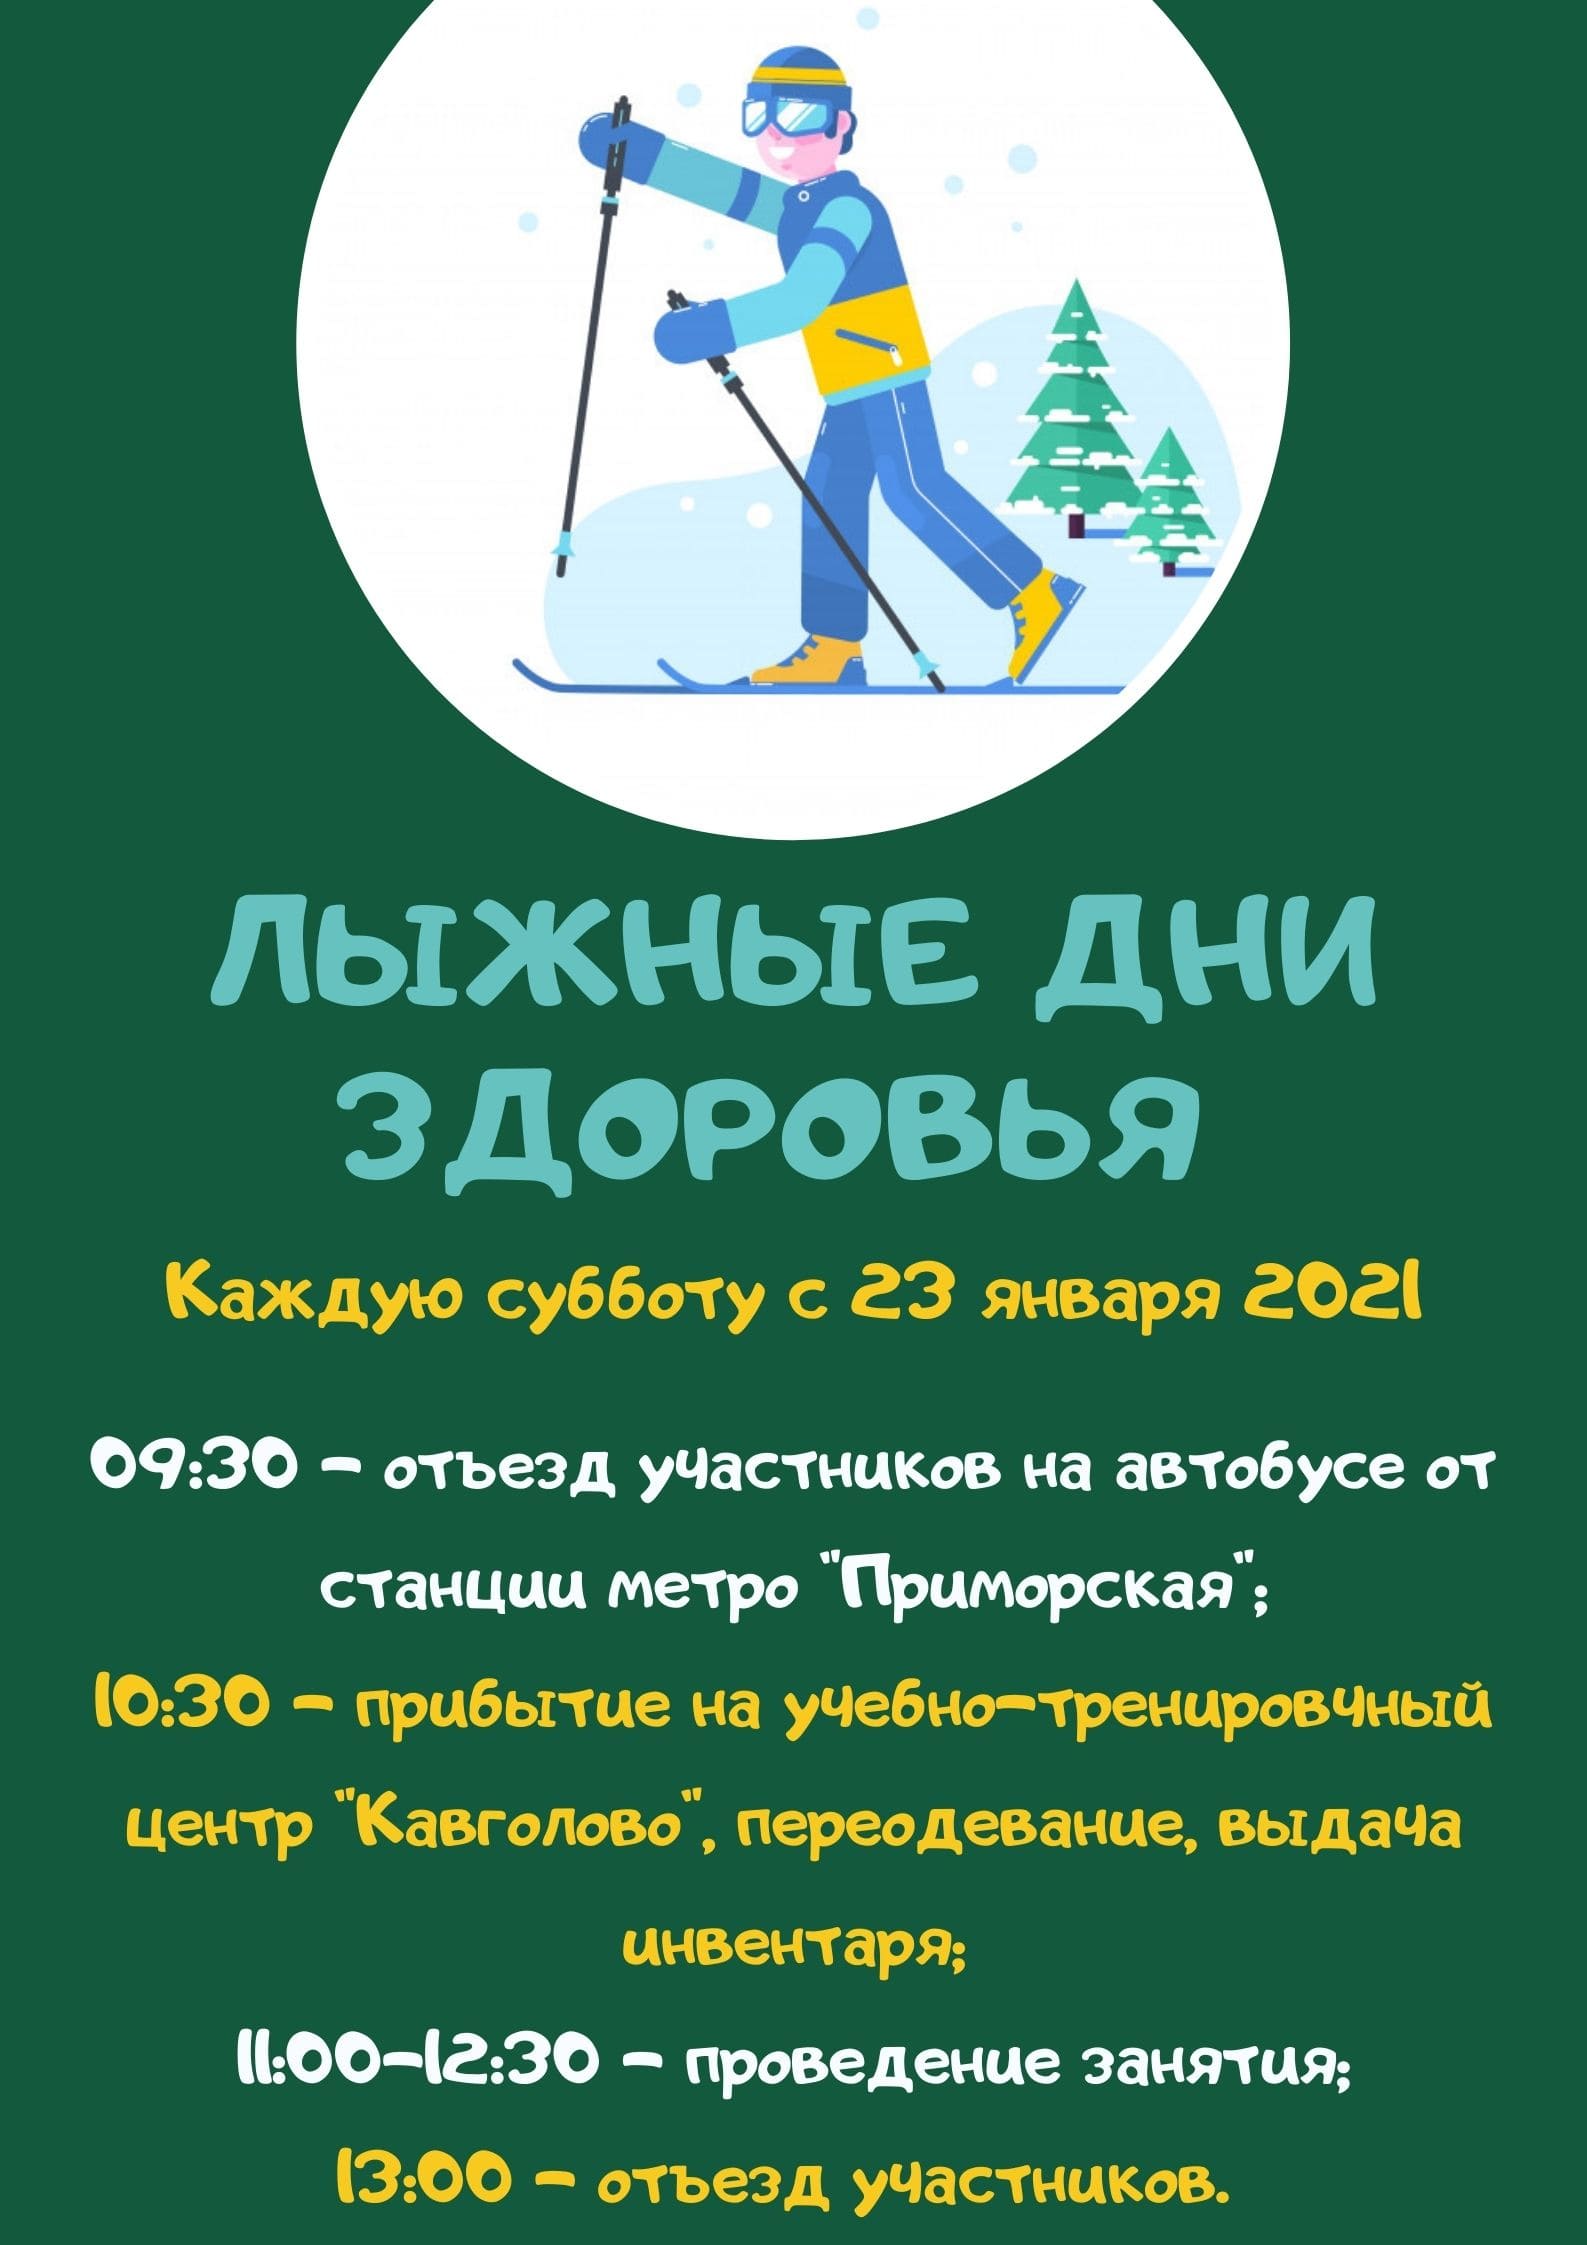 Ski Health Days 2021